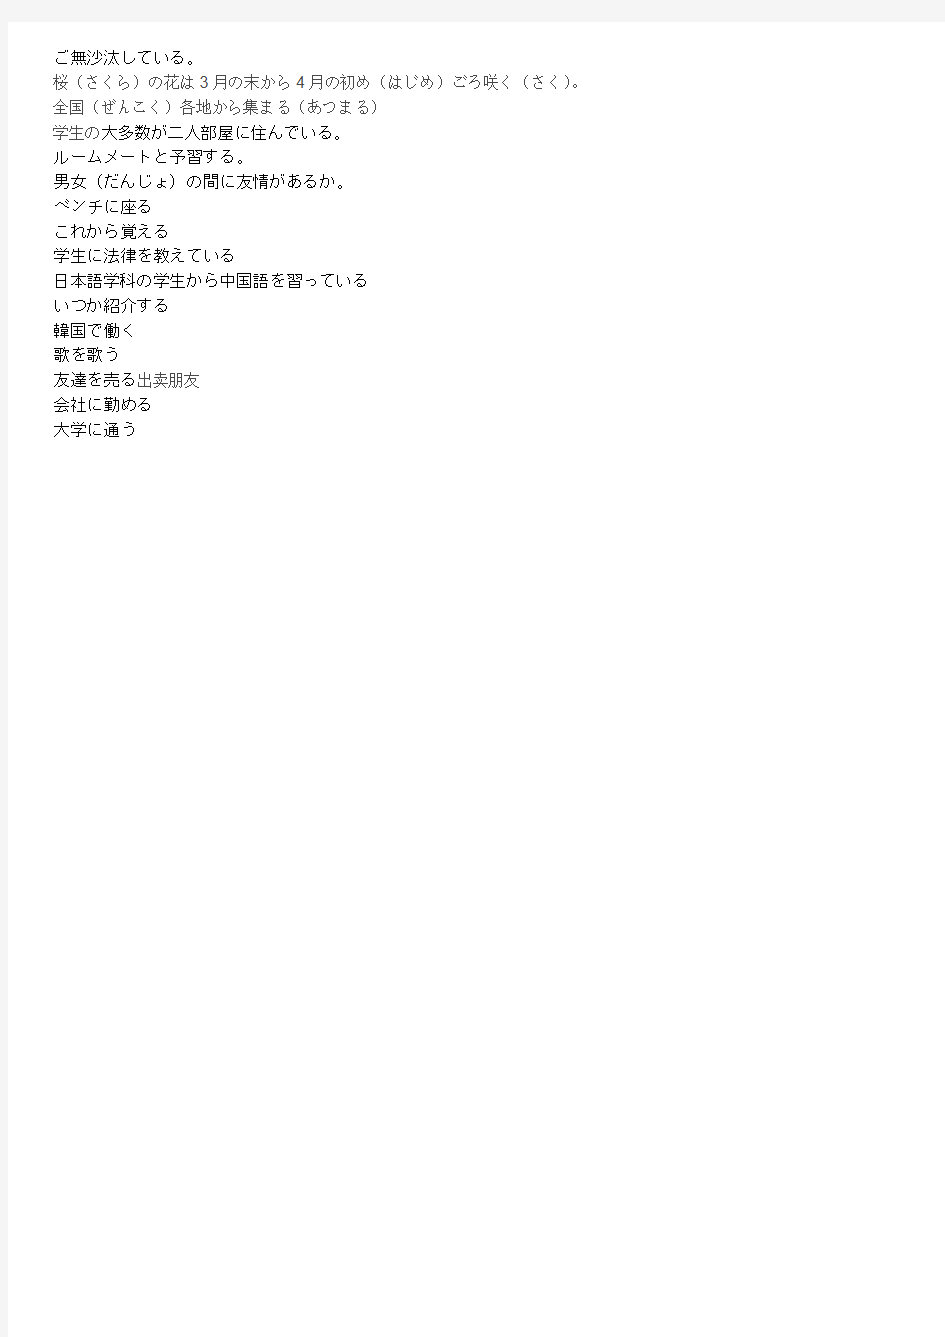 综合日语上11-3单词 (1)